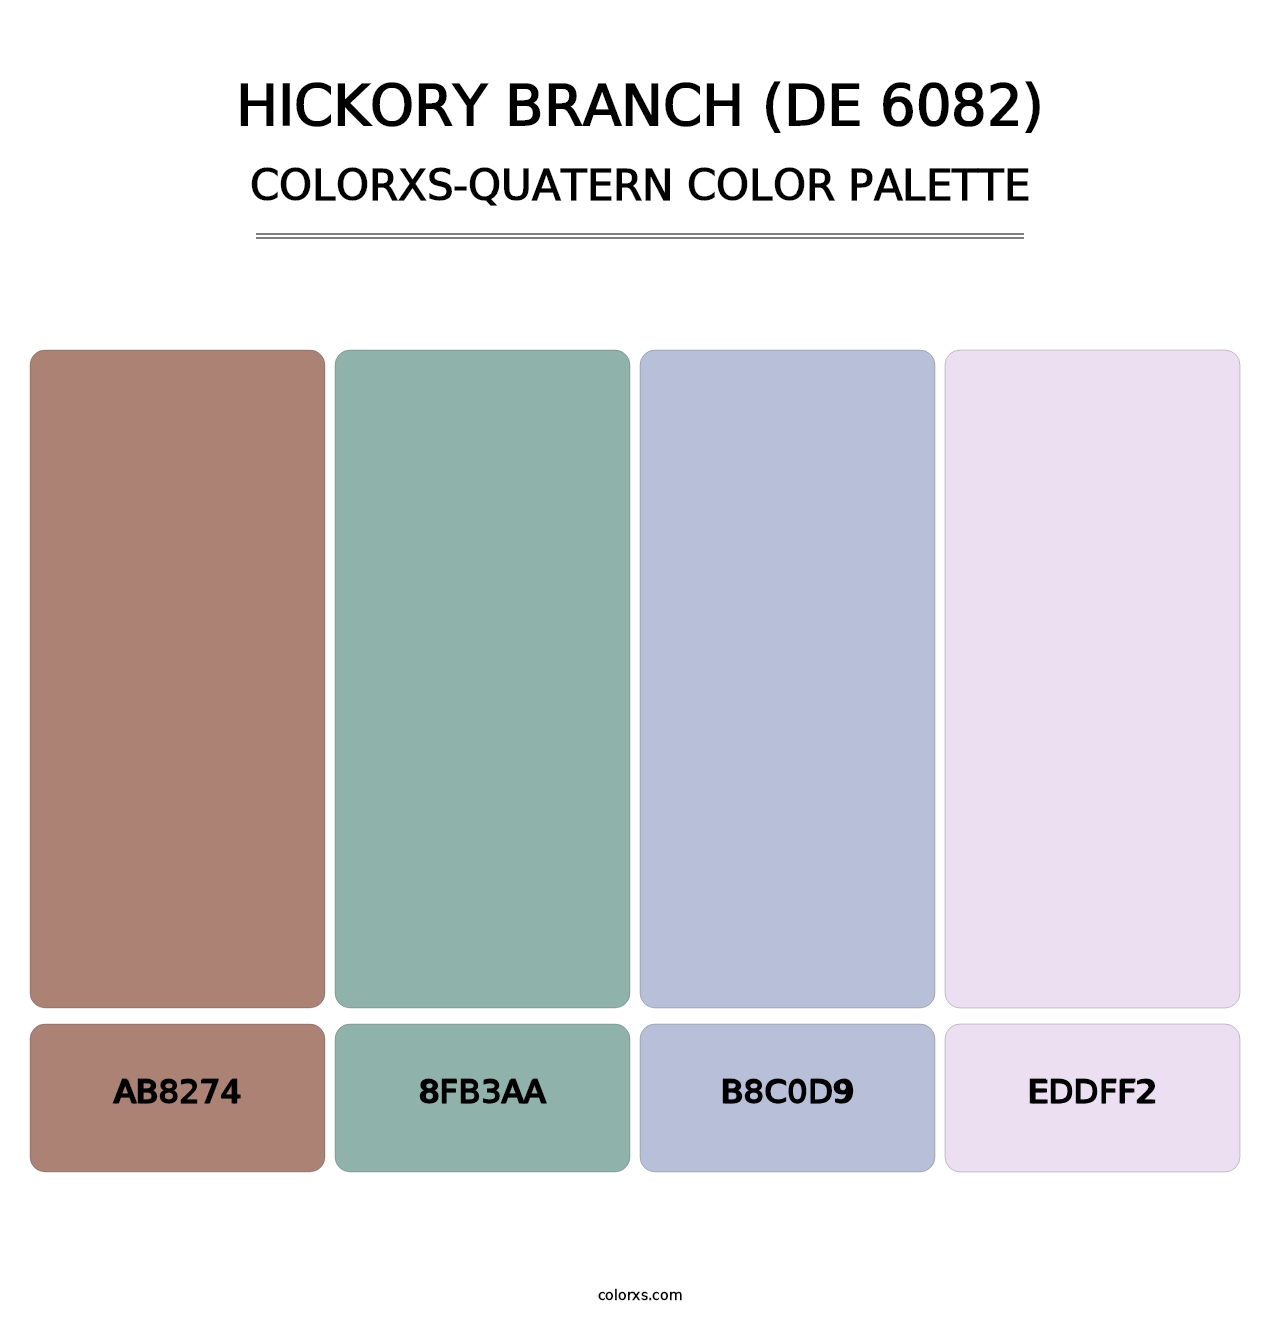 Hickory Branch (DE 6082) - Colorxs Quatern Palette